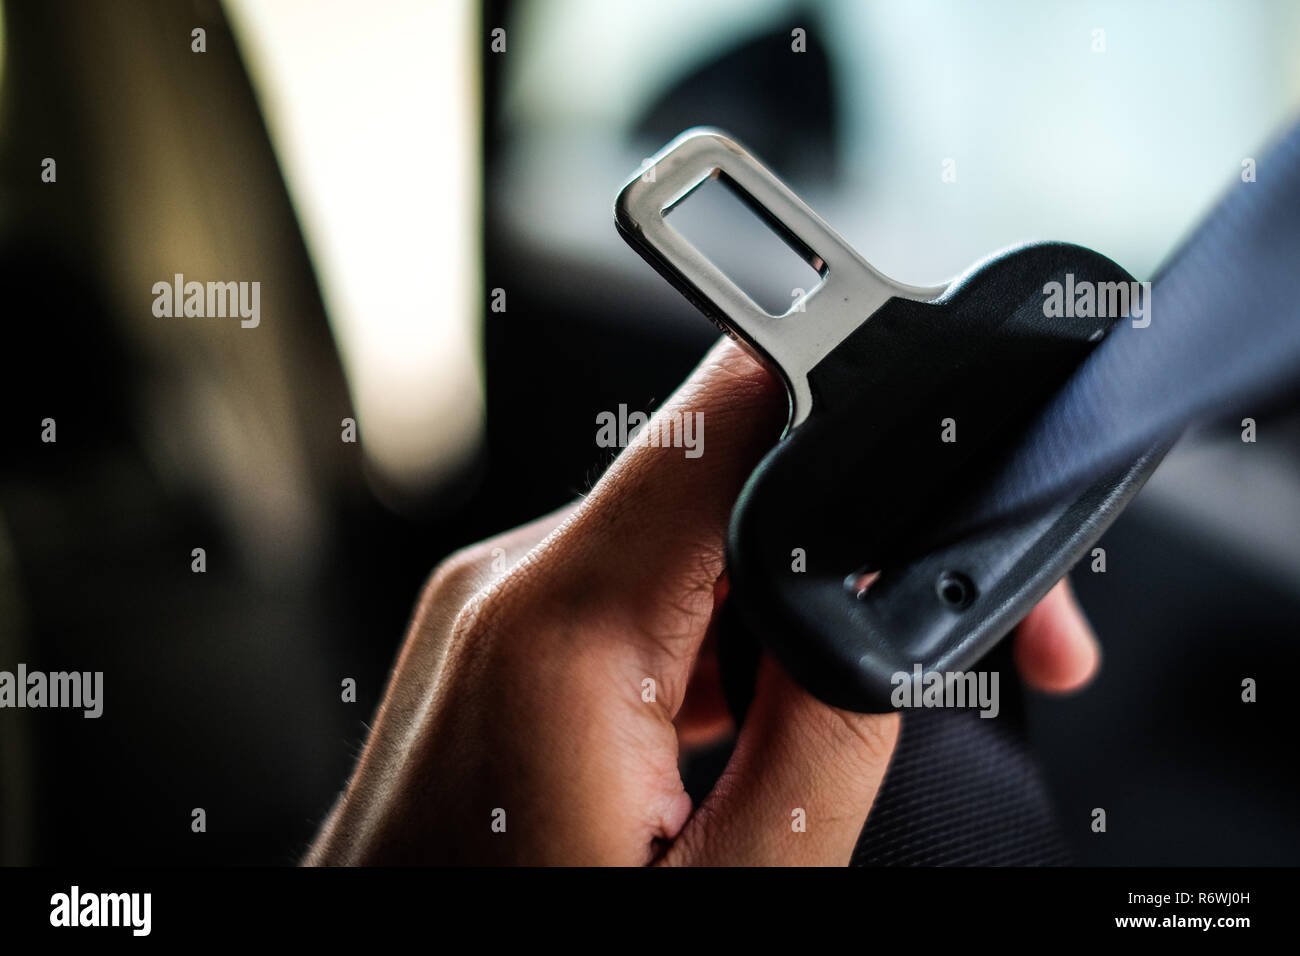 Auto Sicherheitsgurt. Frau befestigt ist der Sicherheitsgurt auf dem Auto  sicheres Fahren. Sicherheitsgurt in der Hand Stockfotografie - Alamy